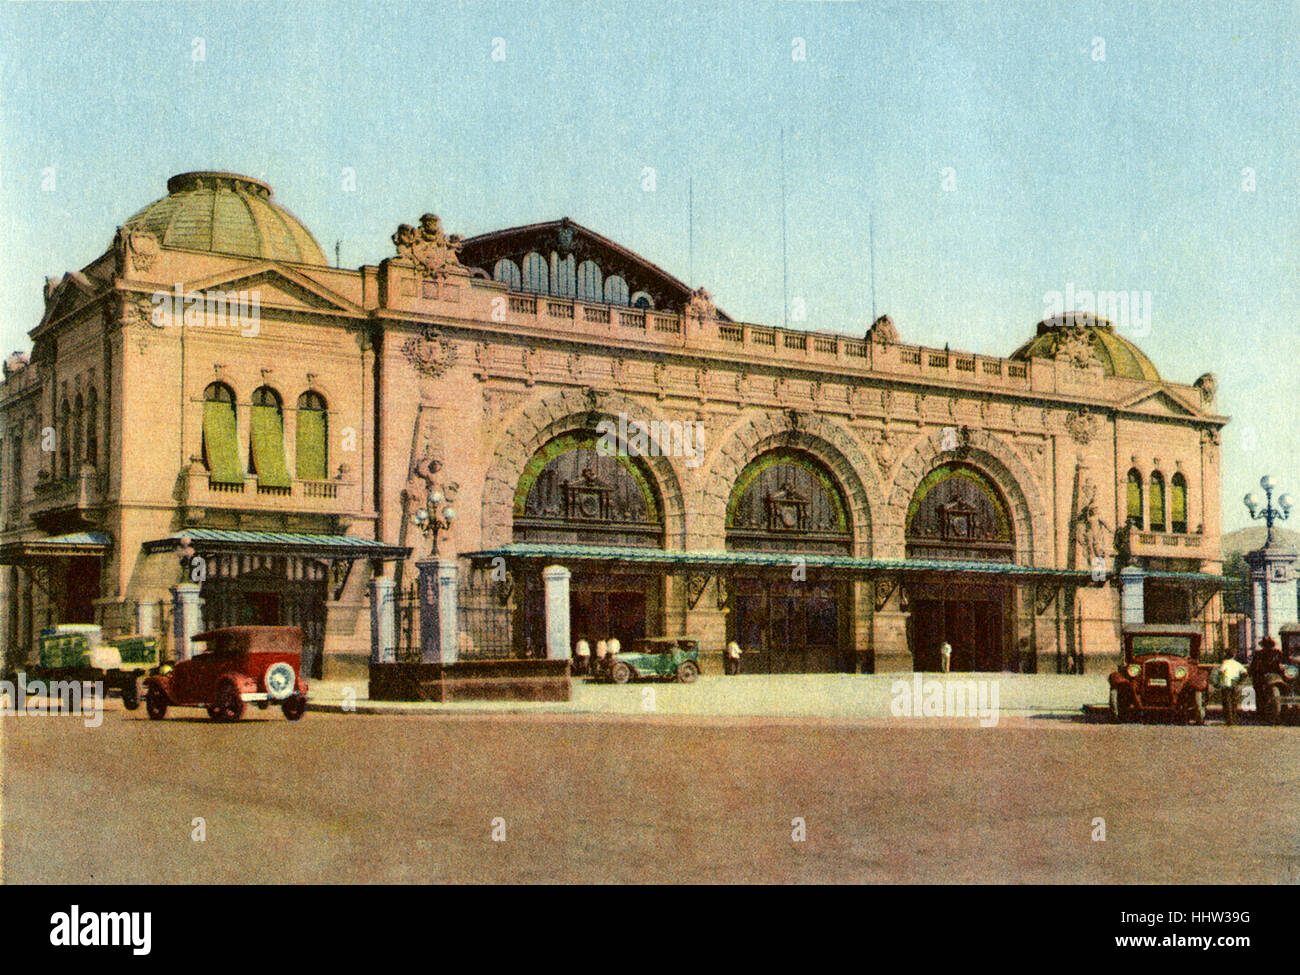 Railway station in Santiago, Chile. Estacion Mapocho. Vintage car. Stock Photo